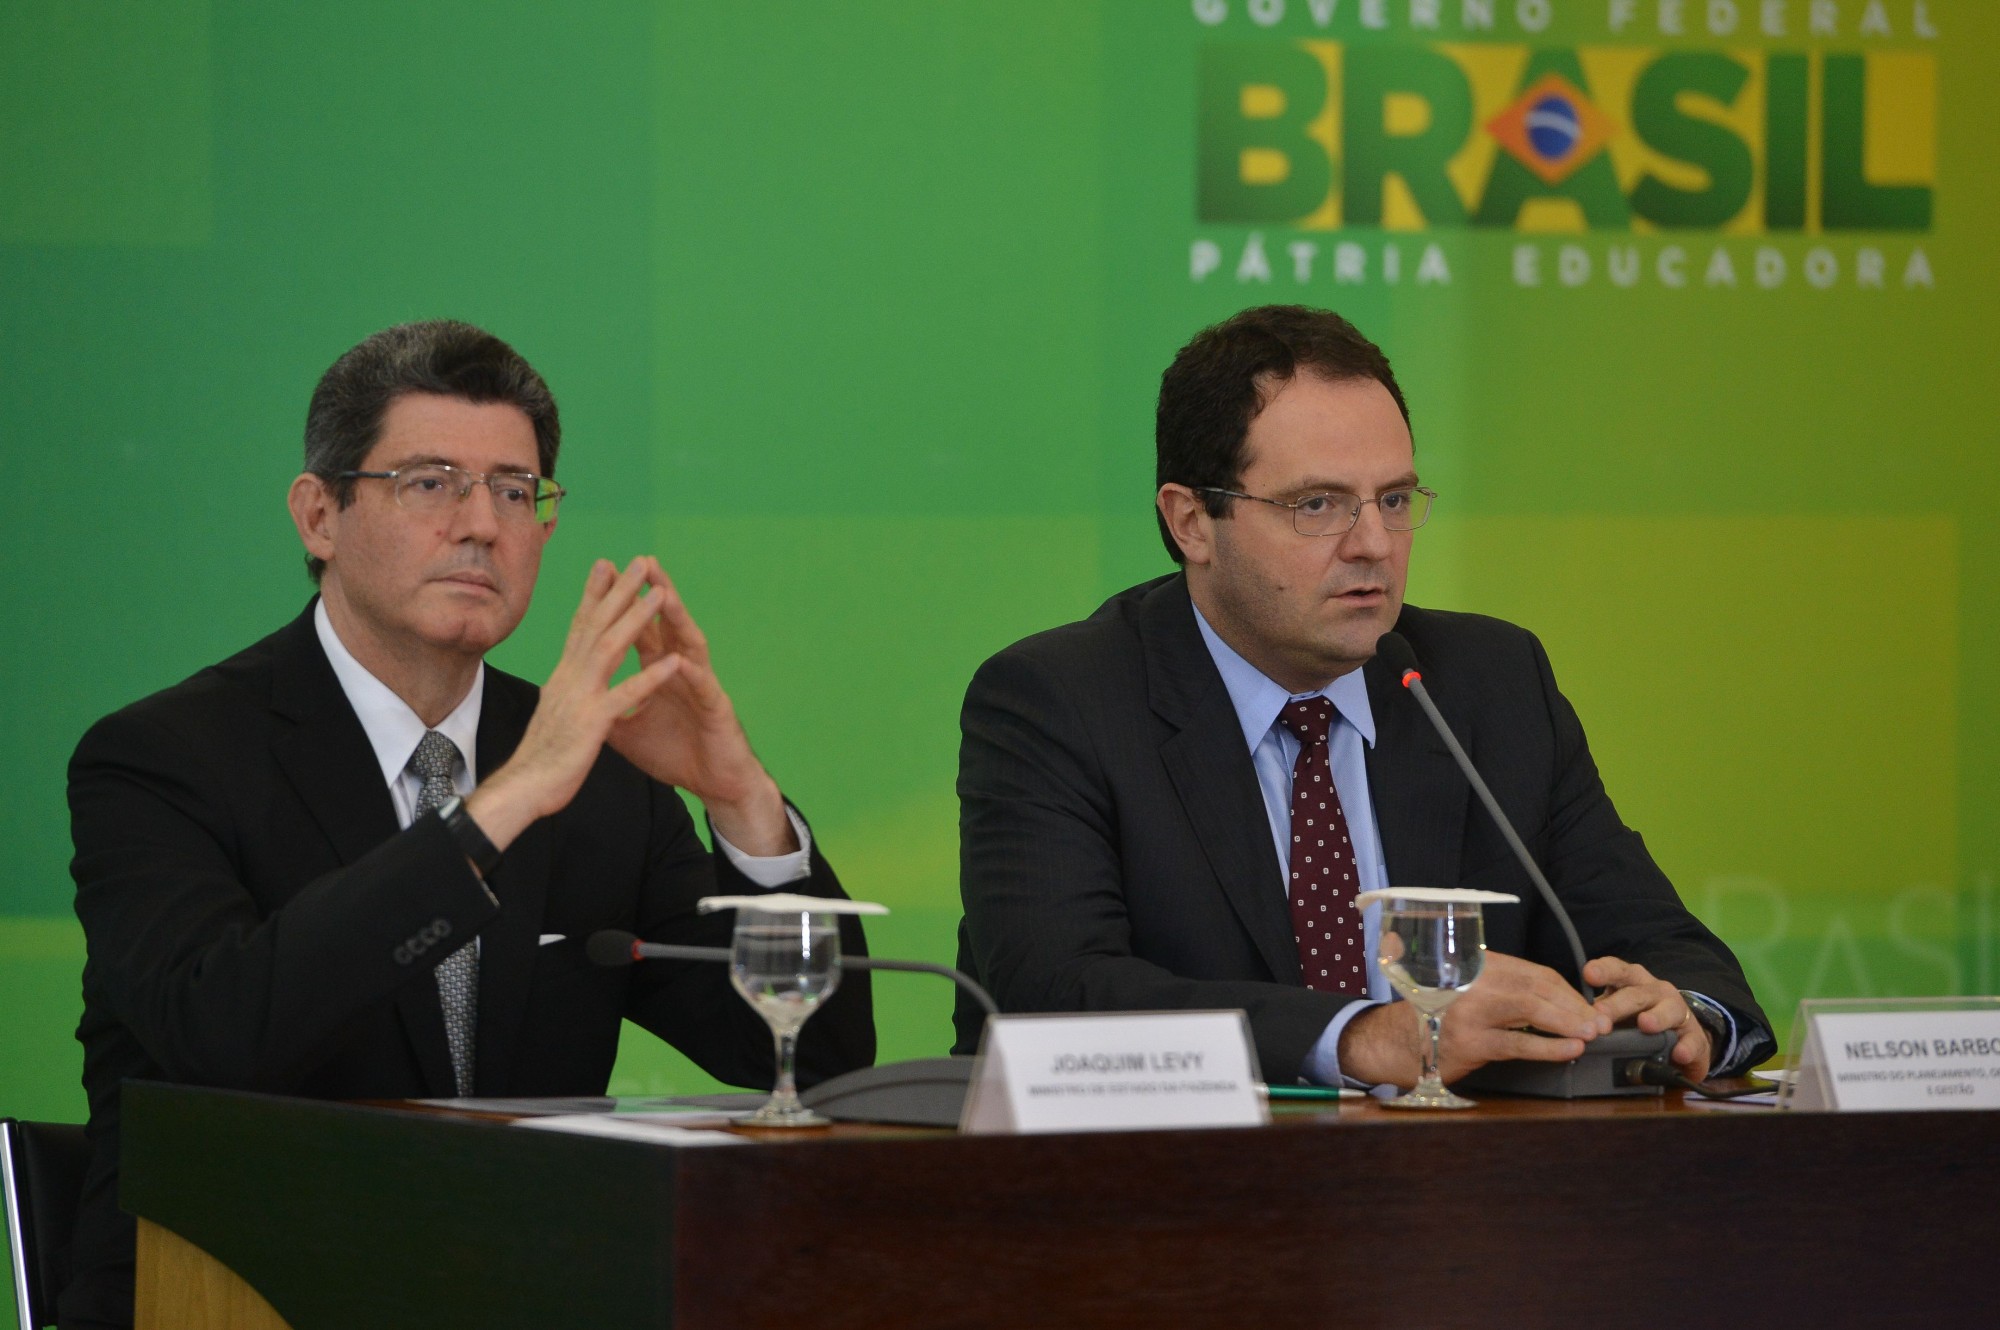 Brazil’s Announcement to Reduce Deficit Receives Criticism